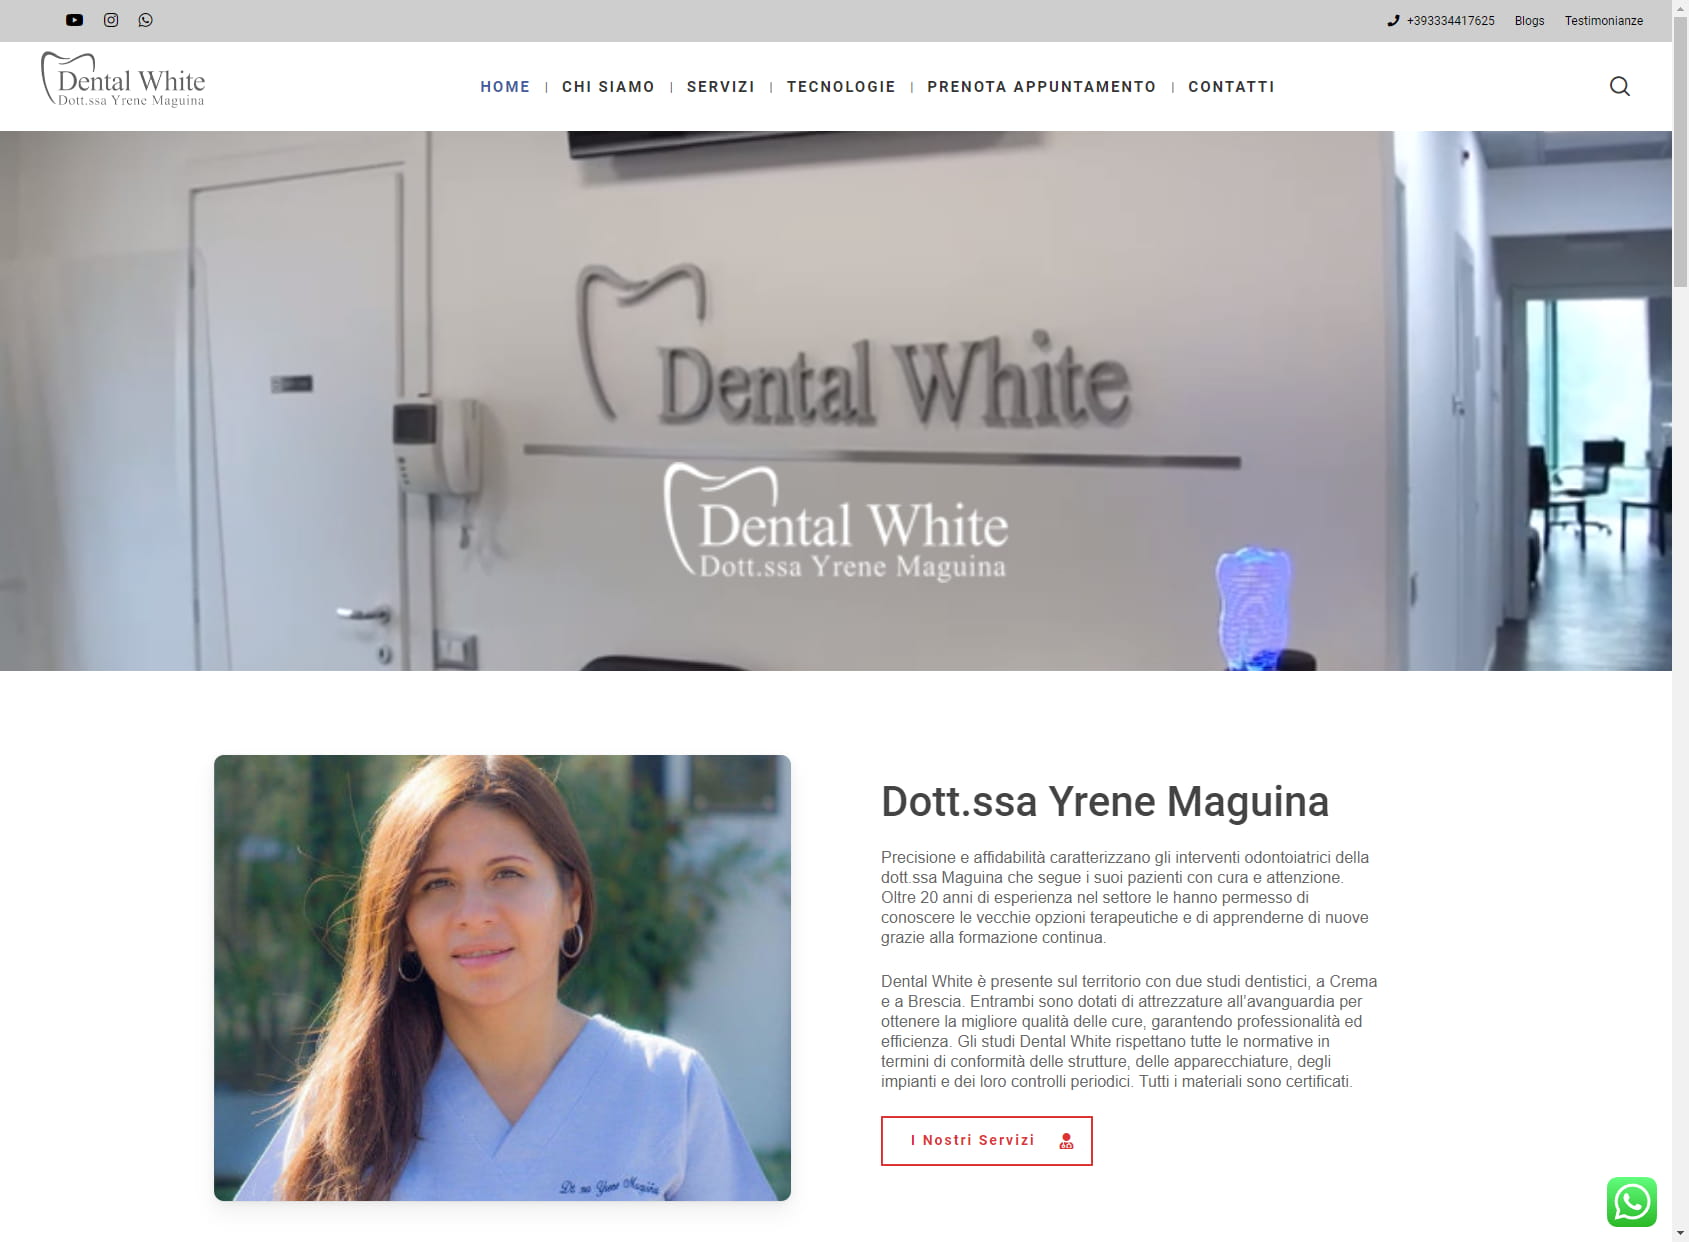 Dental White Studio Dentistico della Dott.ssa Yrene Maguina